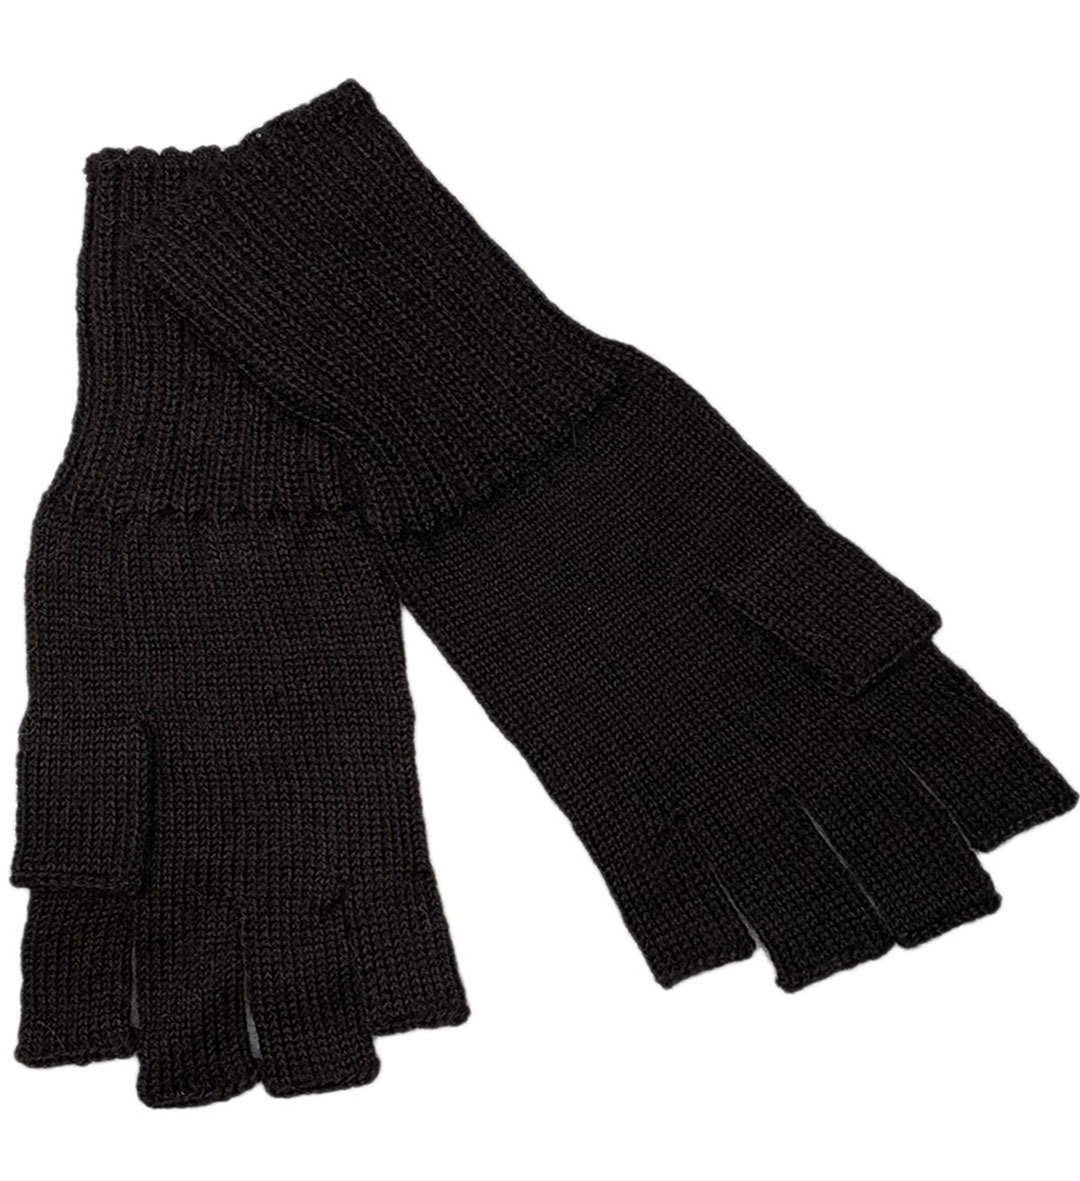 Jesse Fingerless Gloves - Black - 1